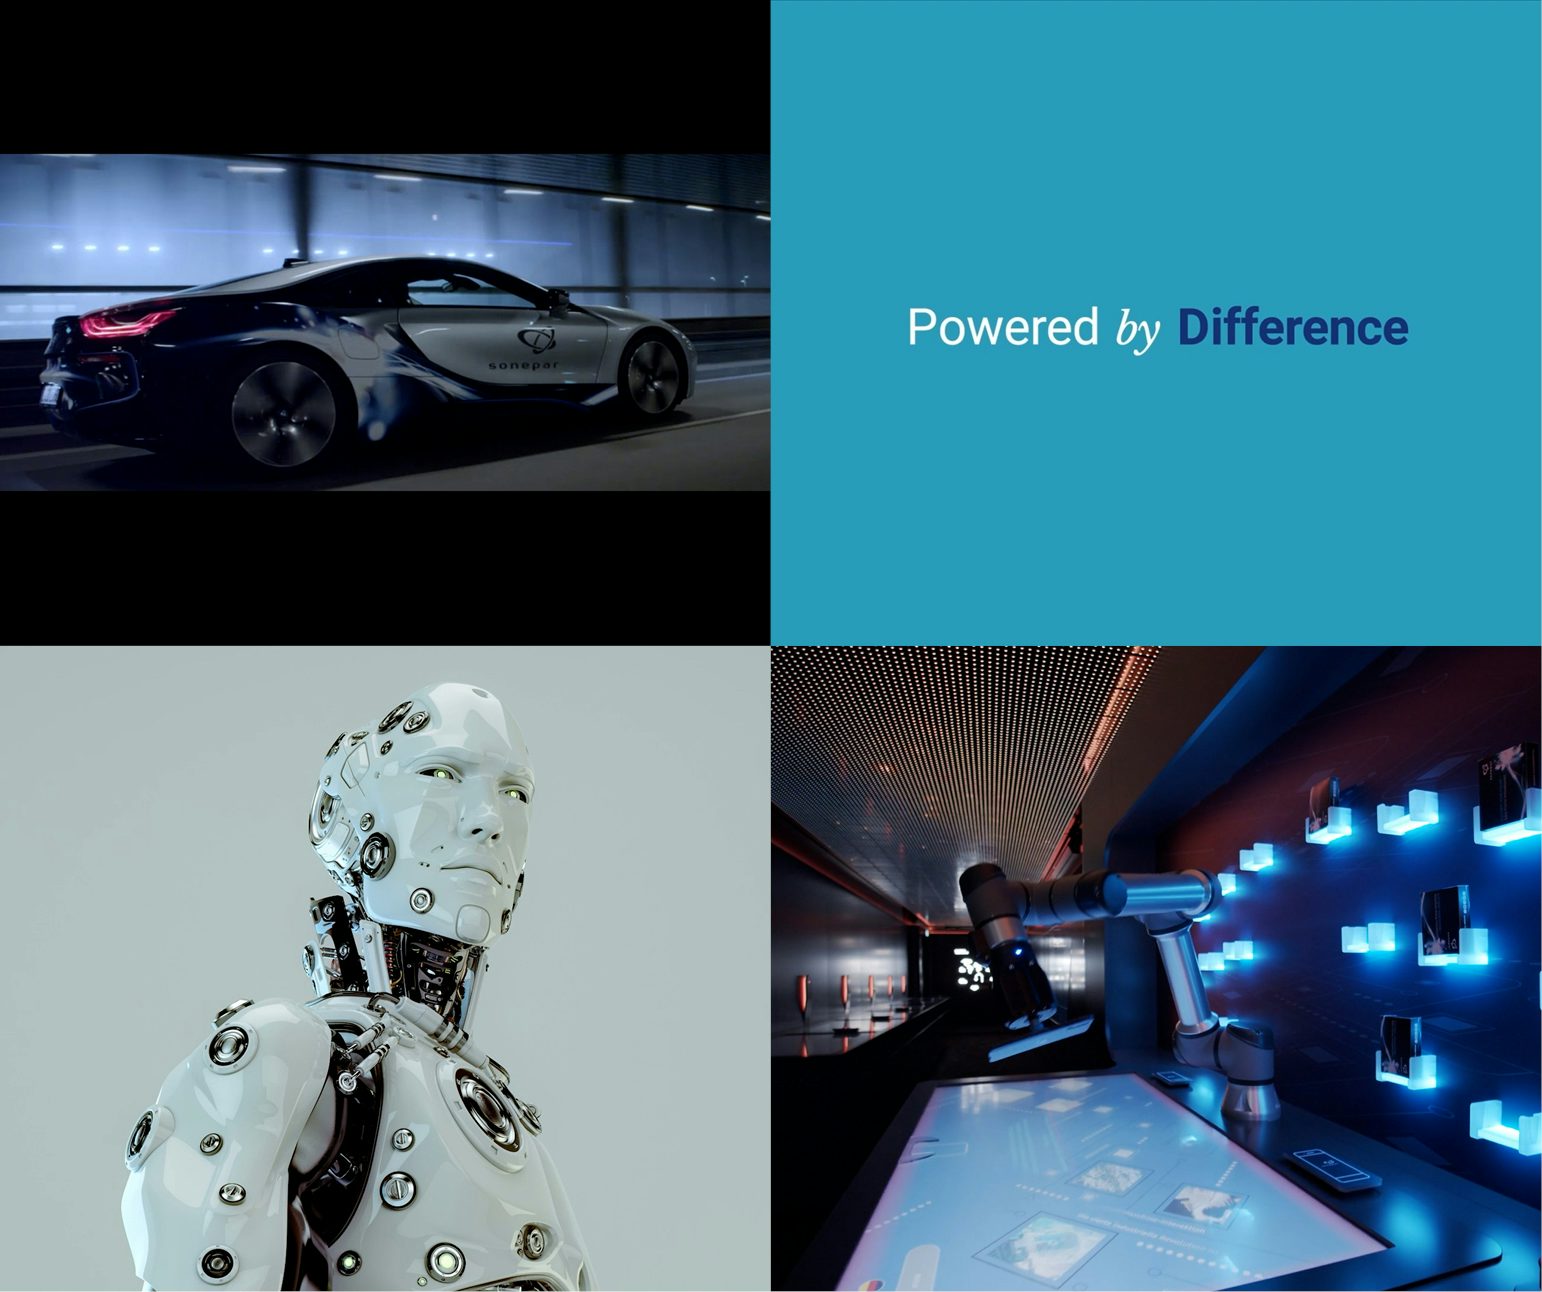 K16 für Sonepar - Collage aus Film-Sequenzen: Sportwagen mit Sonepar-Logo, der Slogan "Powered by Difference", ein Roboter mit menschlichem Gesicht im Portrait und ein Robotik-Arm